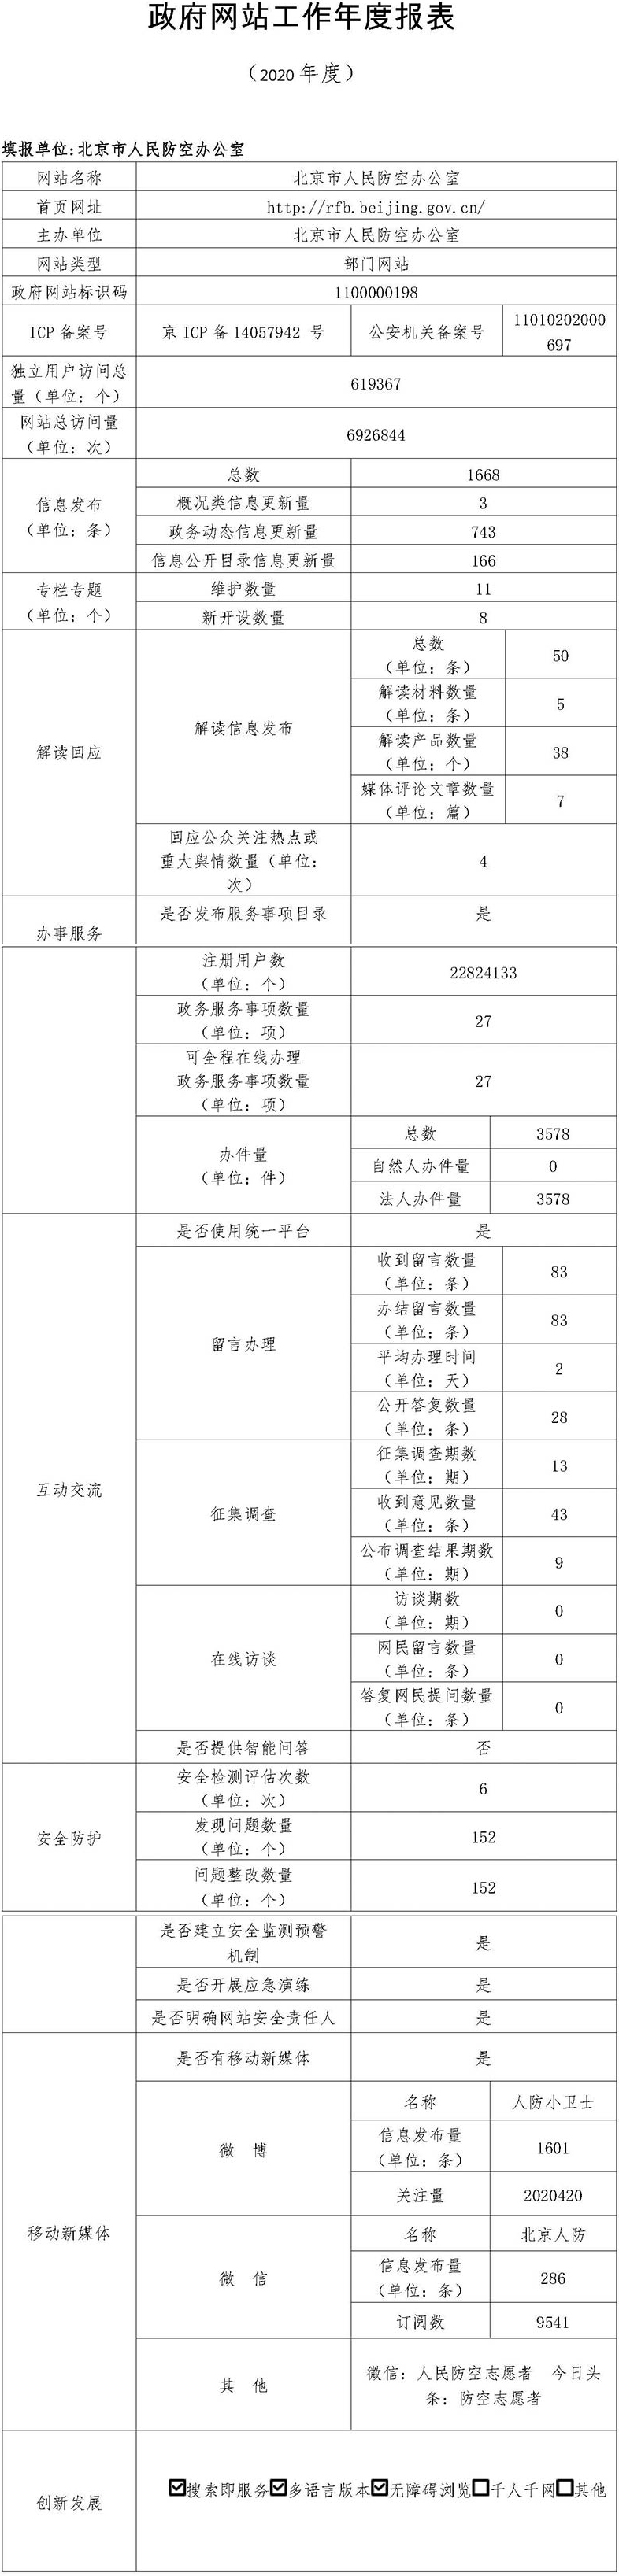 北京市人民防空办公室2020年政府网站年度工作报表